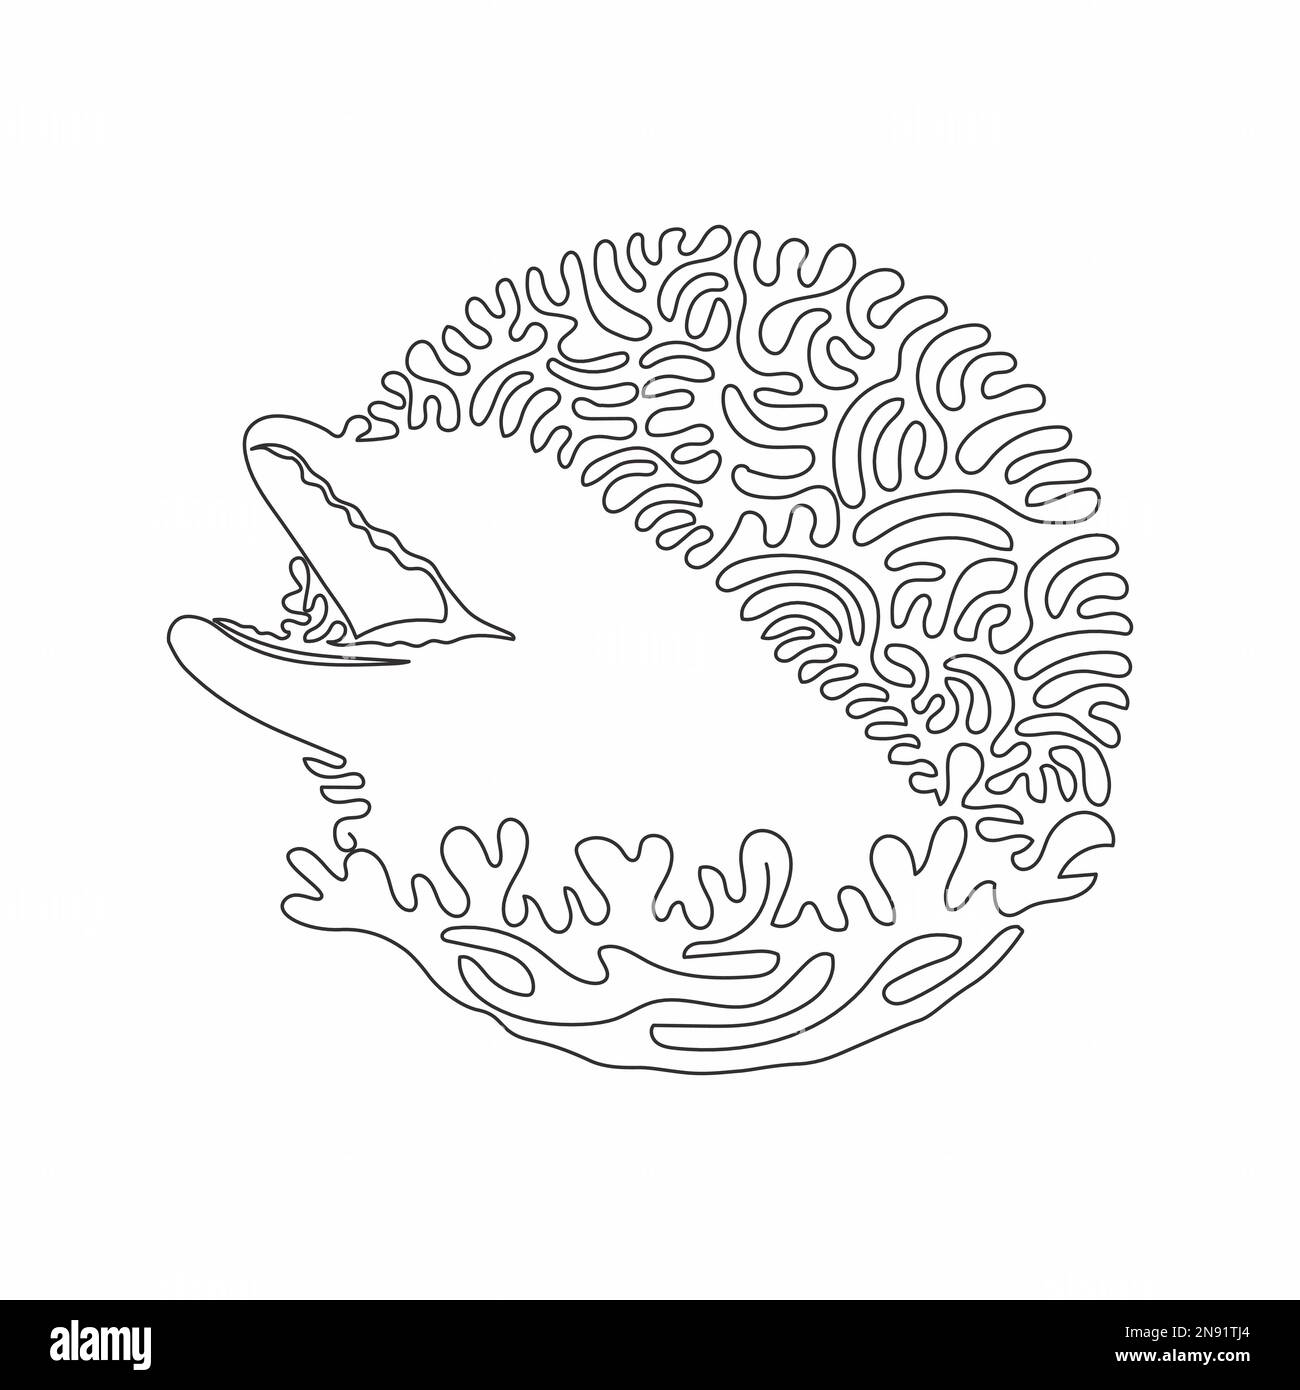 Disegno continuo di una linea curva di divertente arte astratta del delfino Illustrazione del vettore di tratto modificabile a linea singola della pelle liscia del delfino Illustrazione Vettoriale